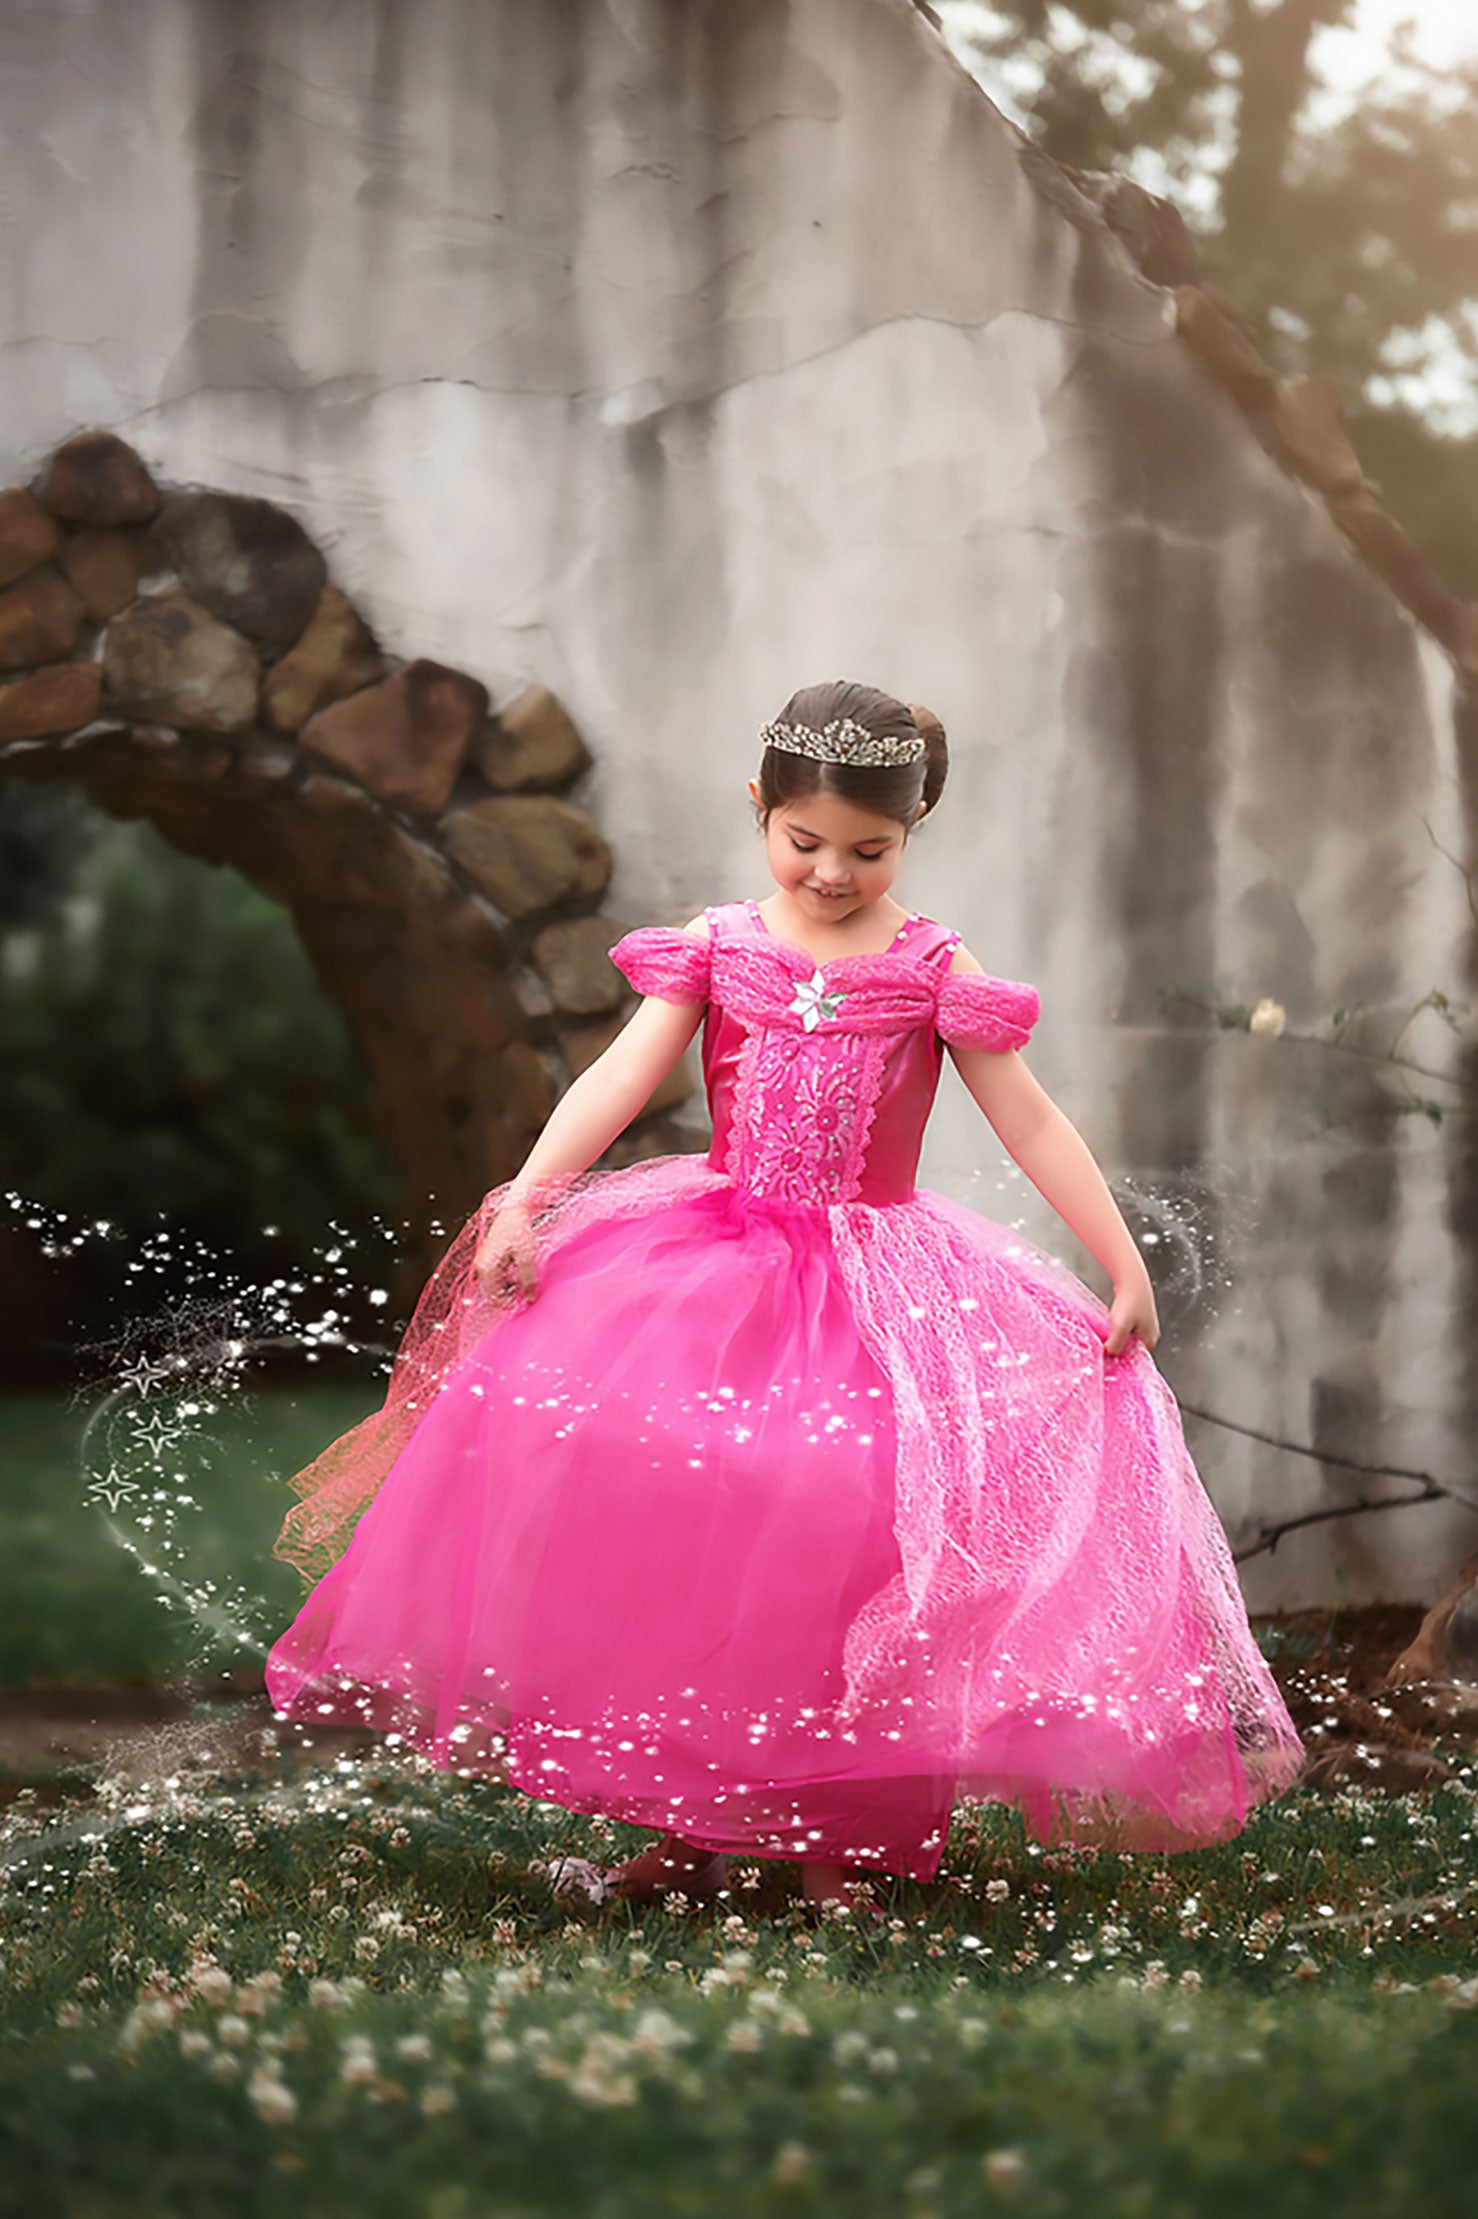 princess with pink dress